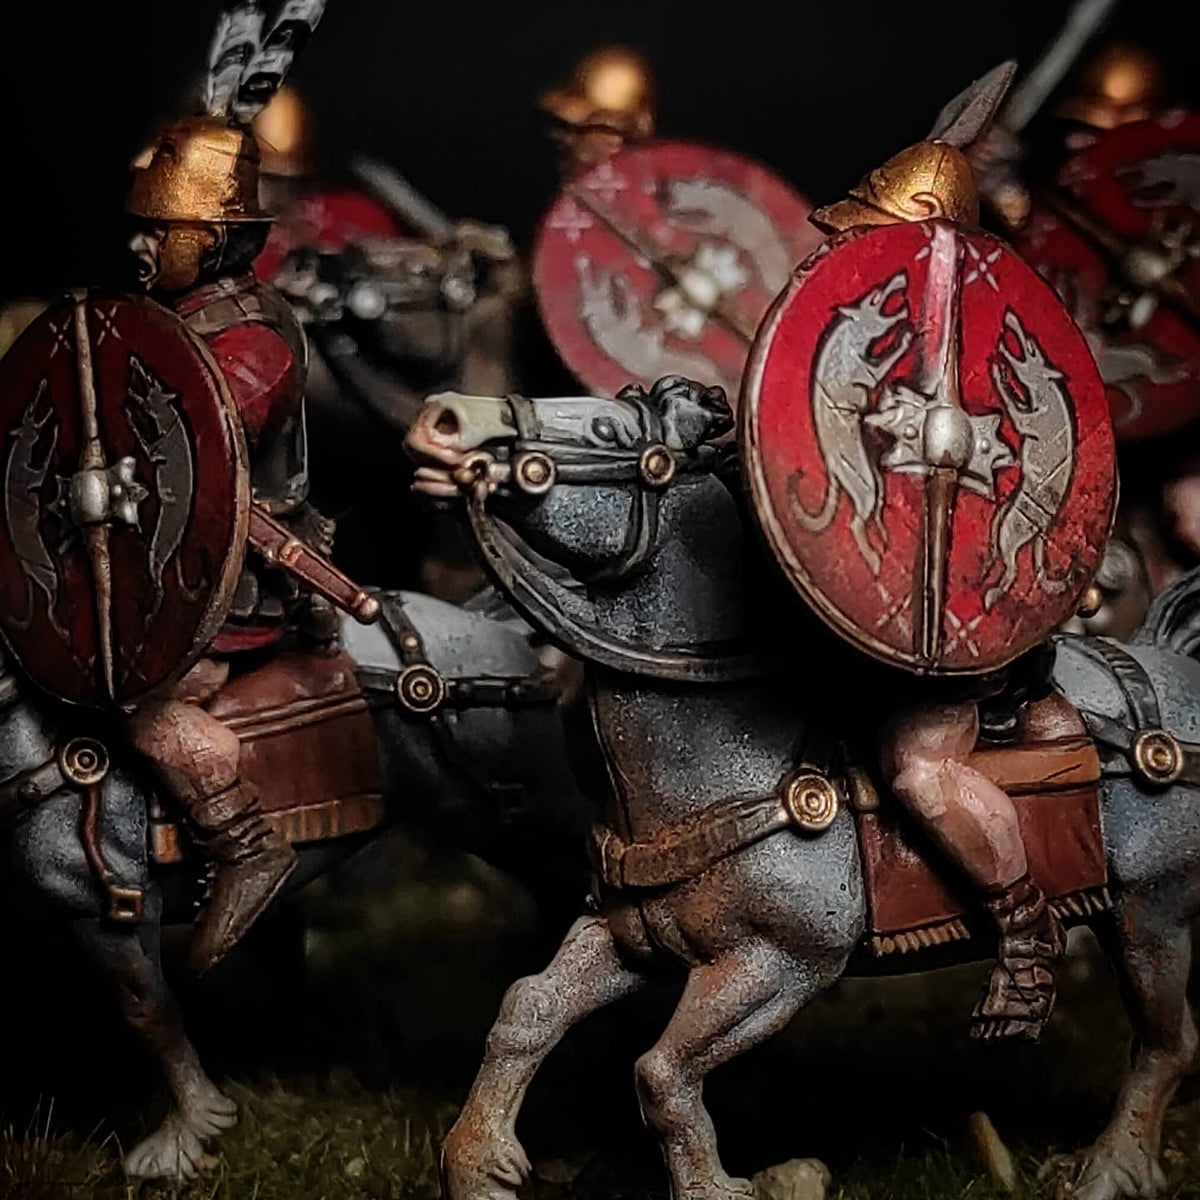 Cavalleria romana repubblicana